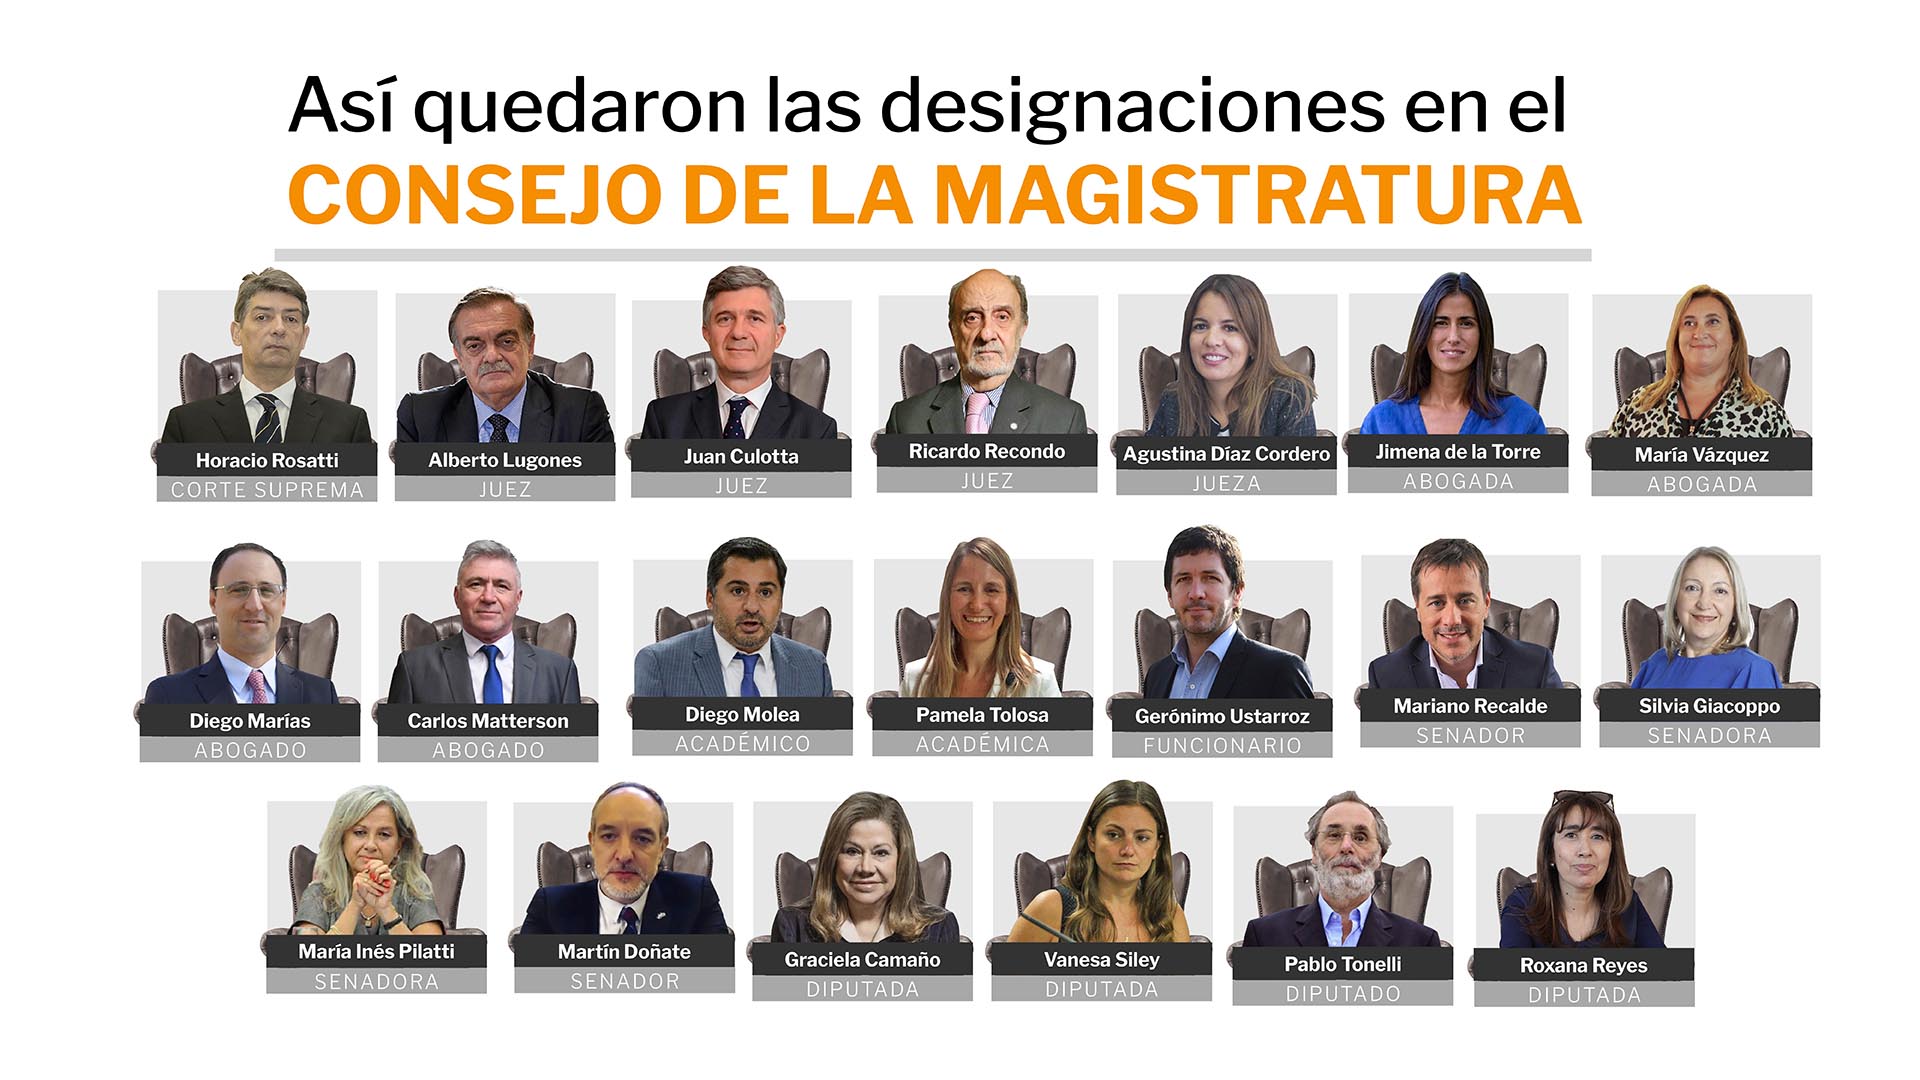 Los 20 integrantes del Consejo de la Magistratura